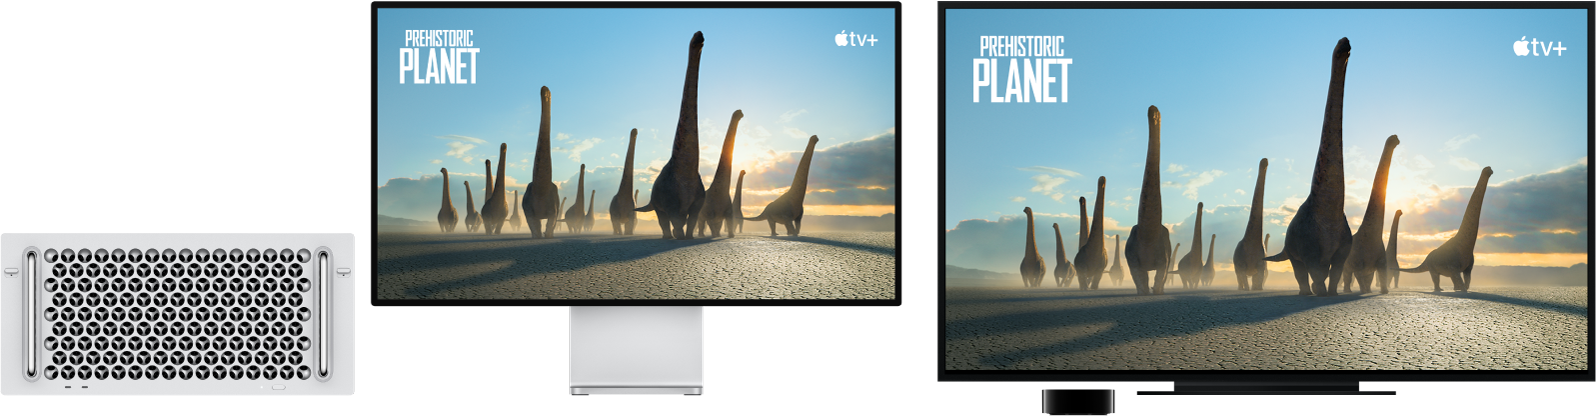 Изображение Mac Pro, материалы с которого дублируются на экран большого HD-телевизора с помощью Apple TV.